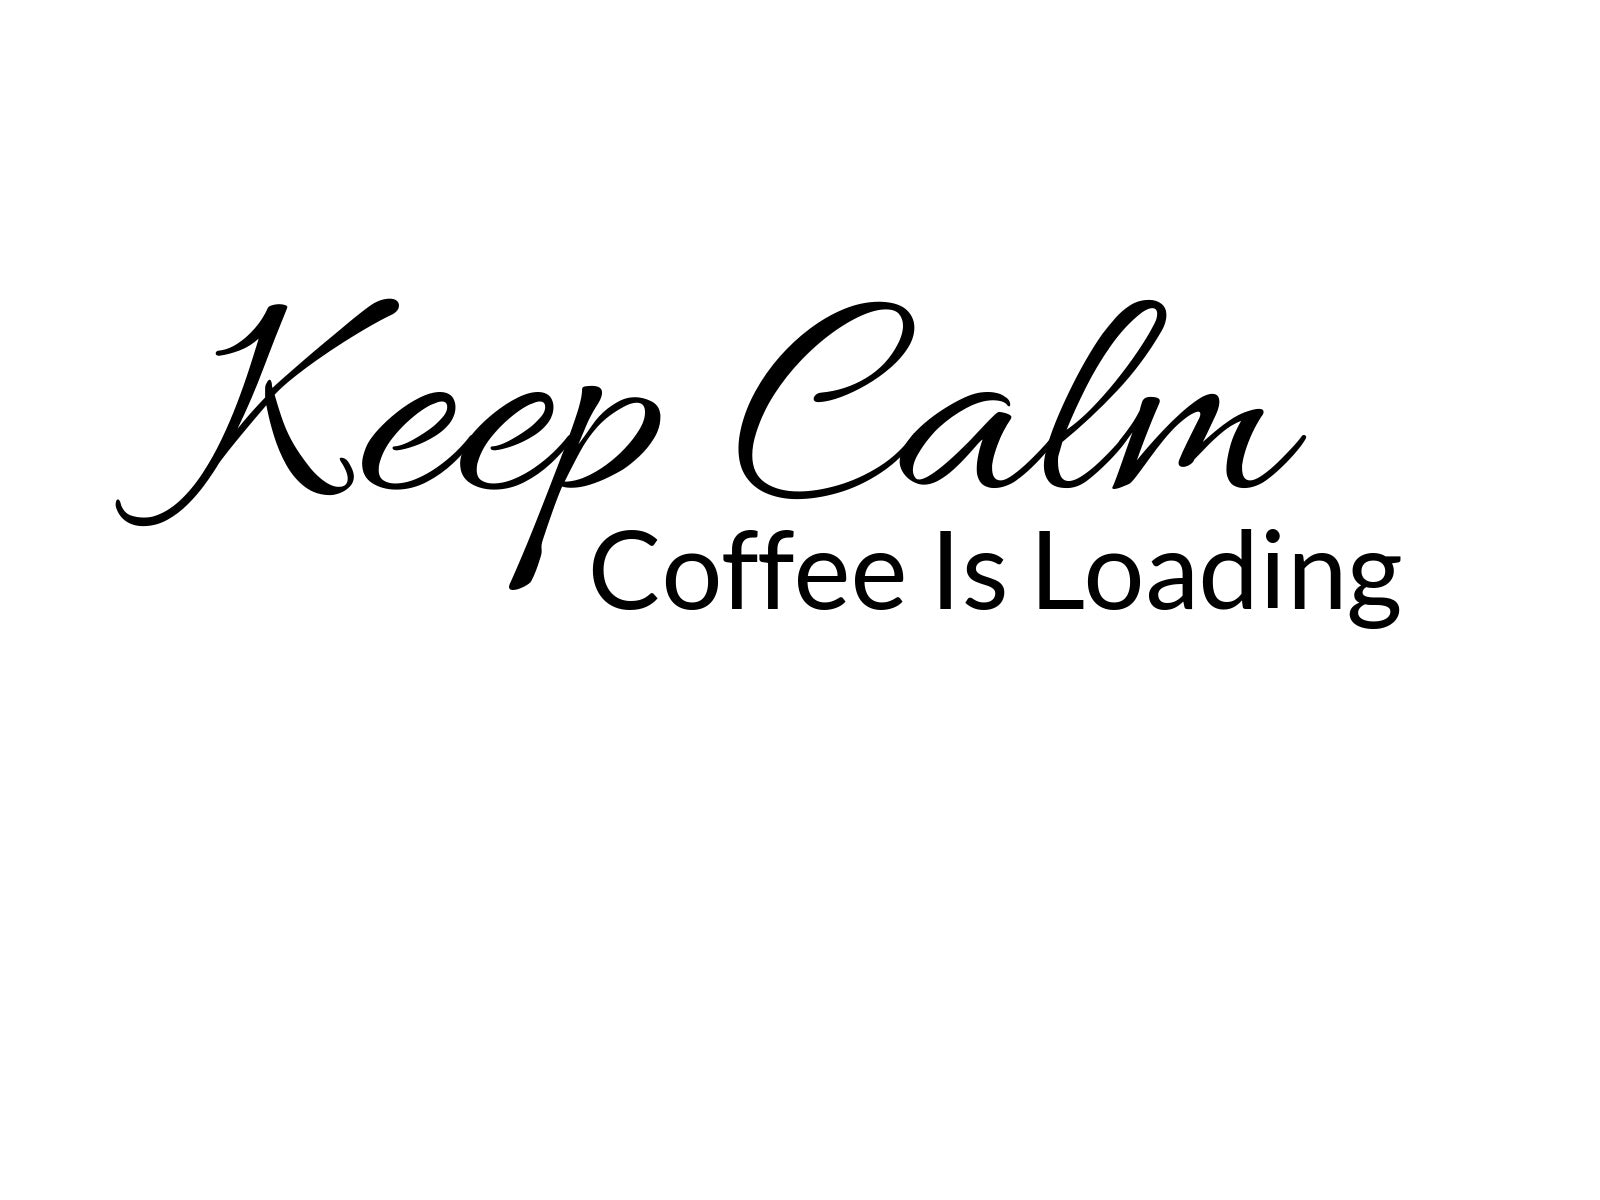 Keep Calm. Coffee Is Loading